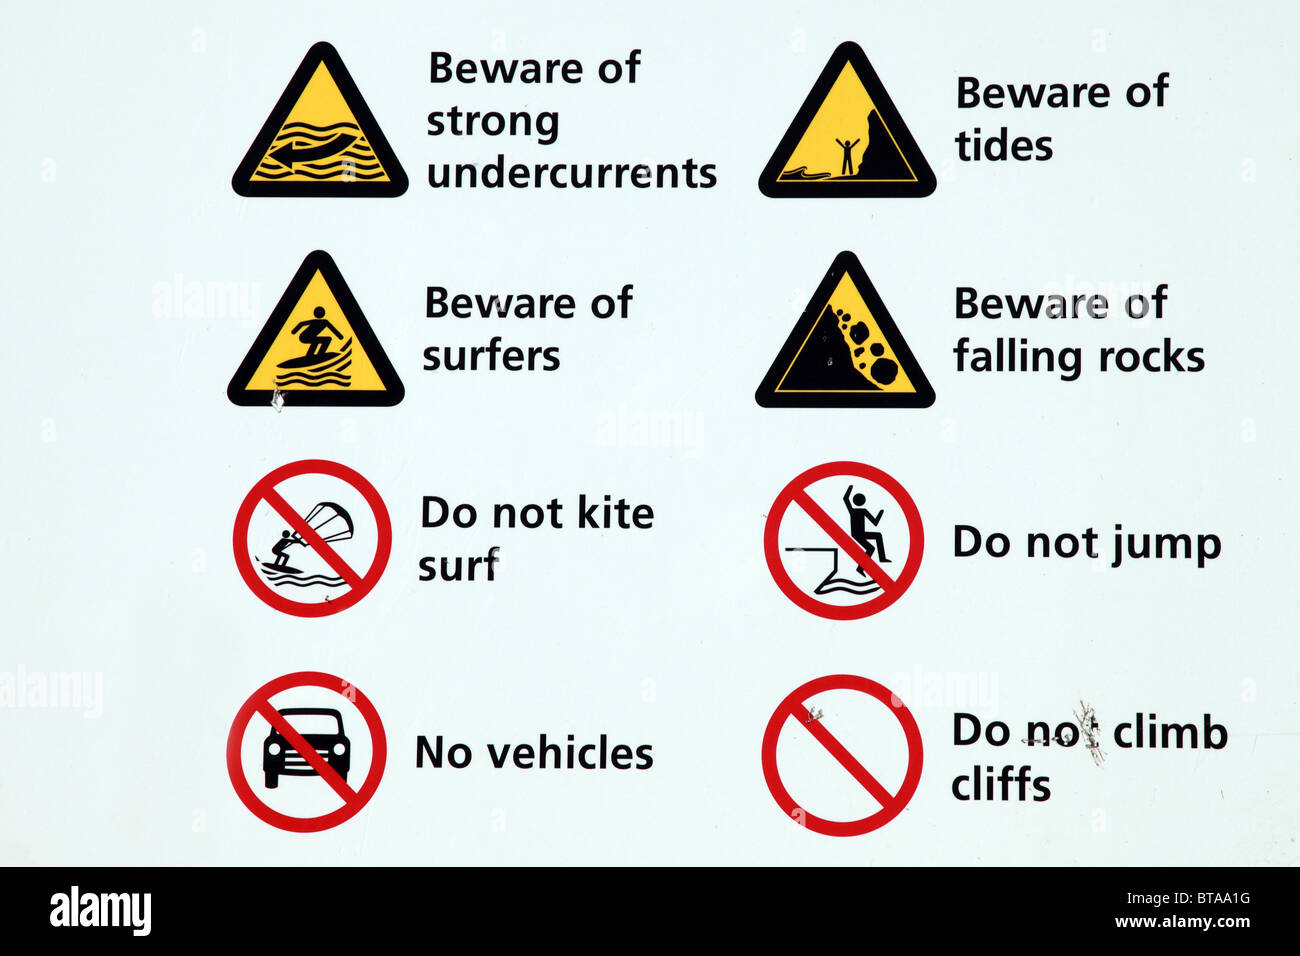 Sea safety warnings, Cornwall Stock Photo